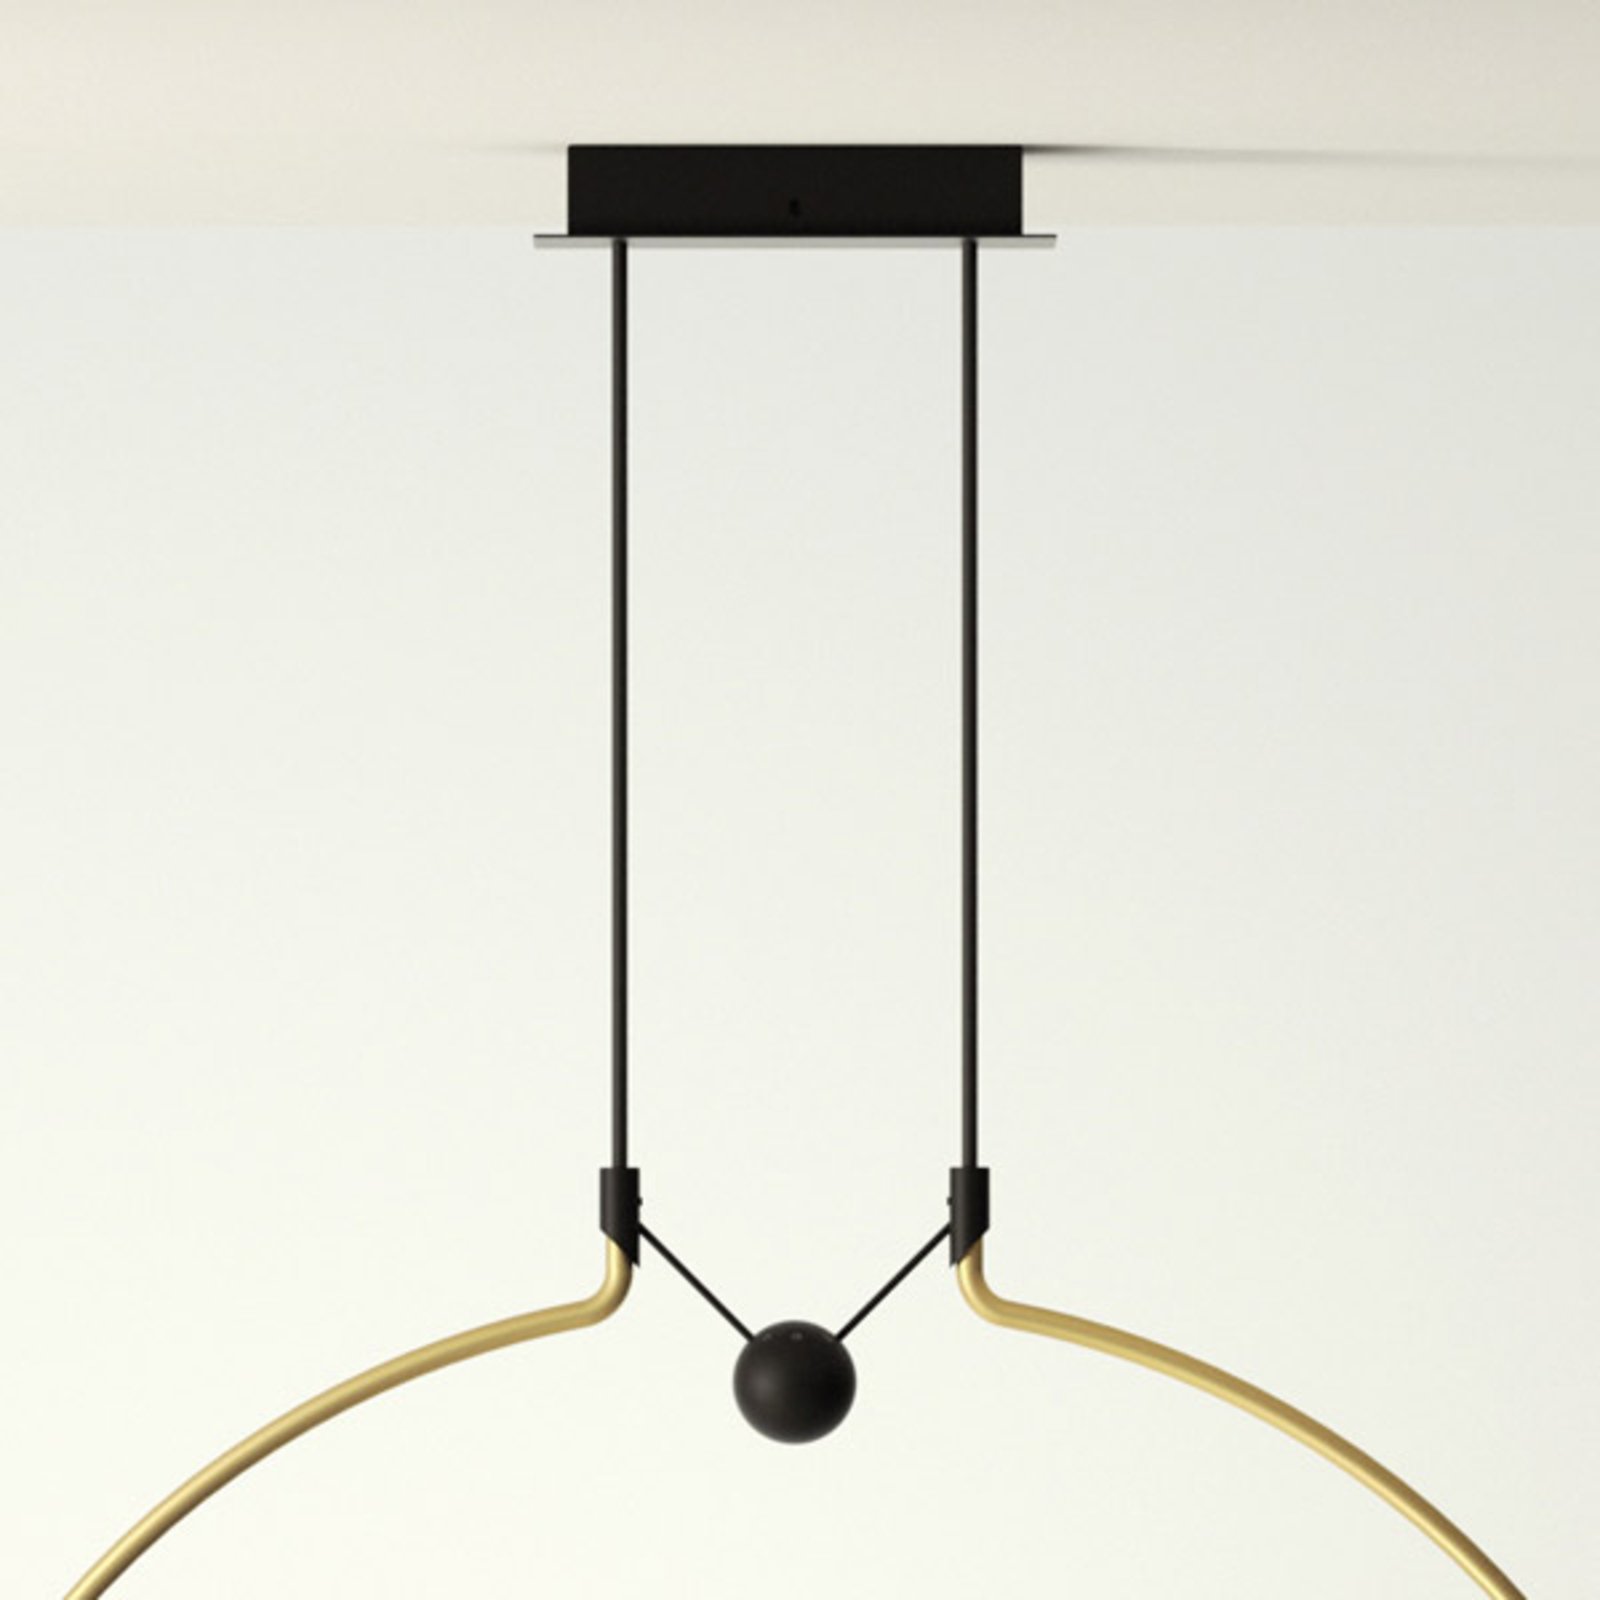 Axolight Liaison M2 hanglamp goud/zwart 84cm